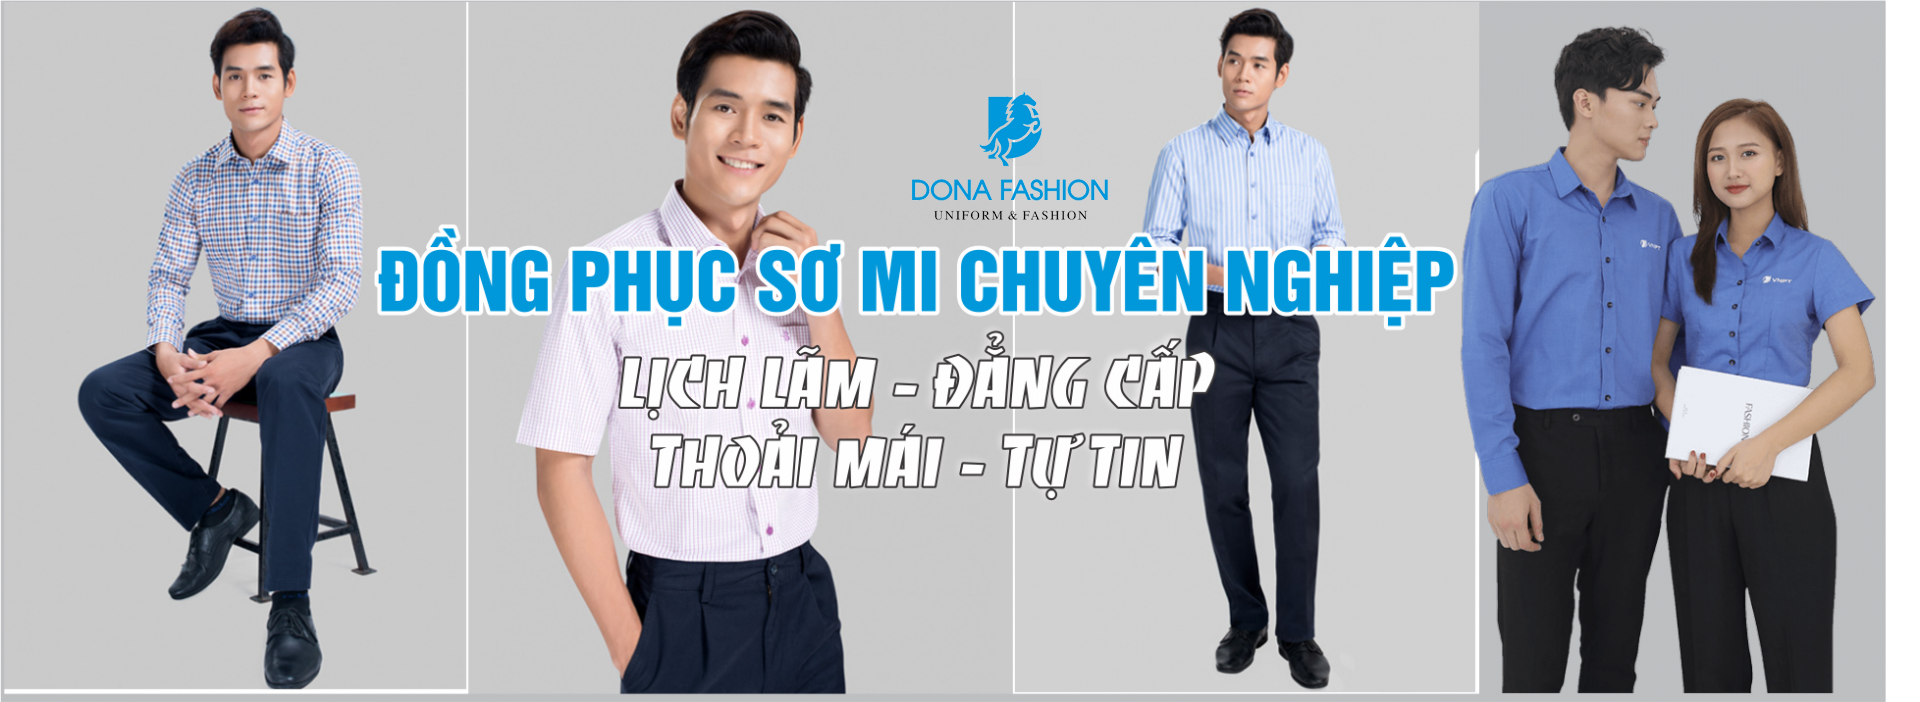 may dong phuc so mi van phong tai dong nai